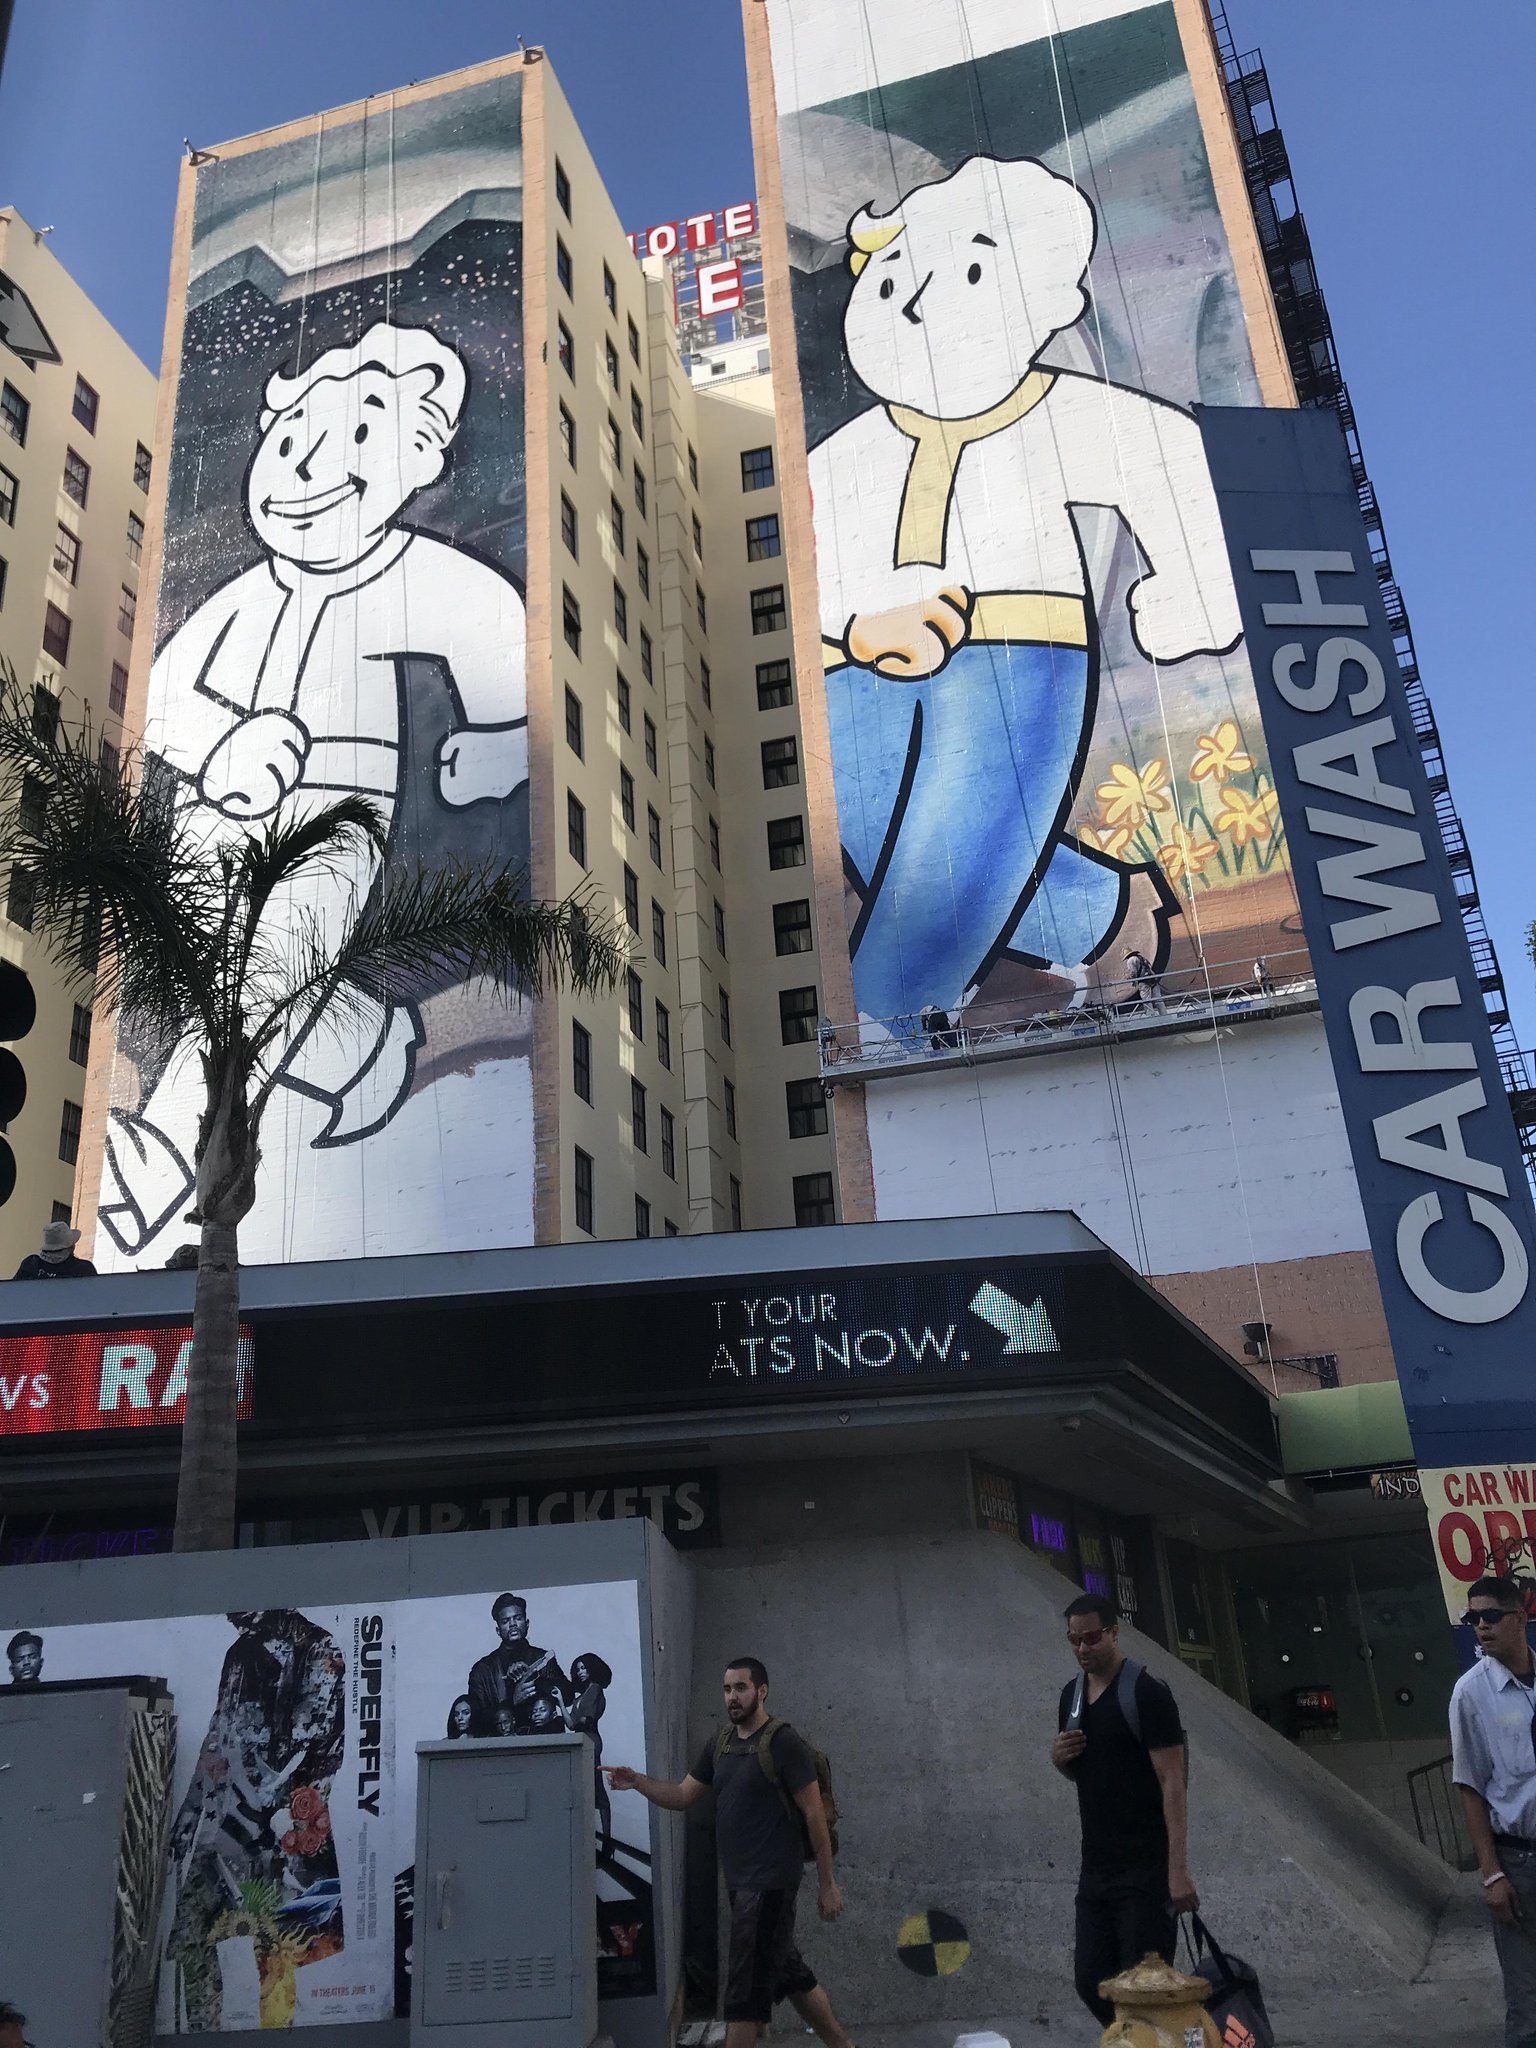 Рекламный баннер в Лос-Анджелесе как бы уже намекает на кооператив.